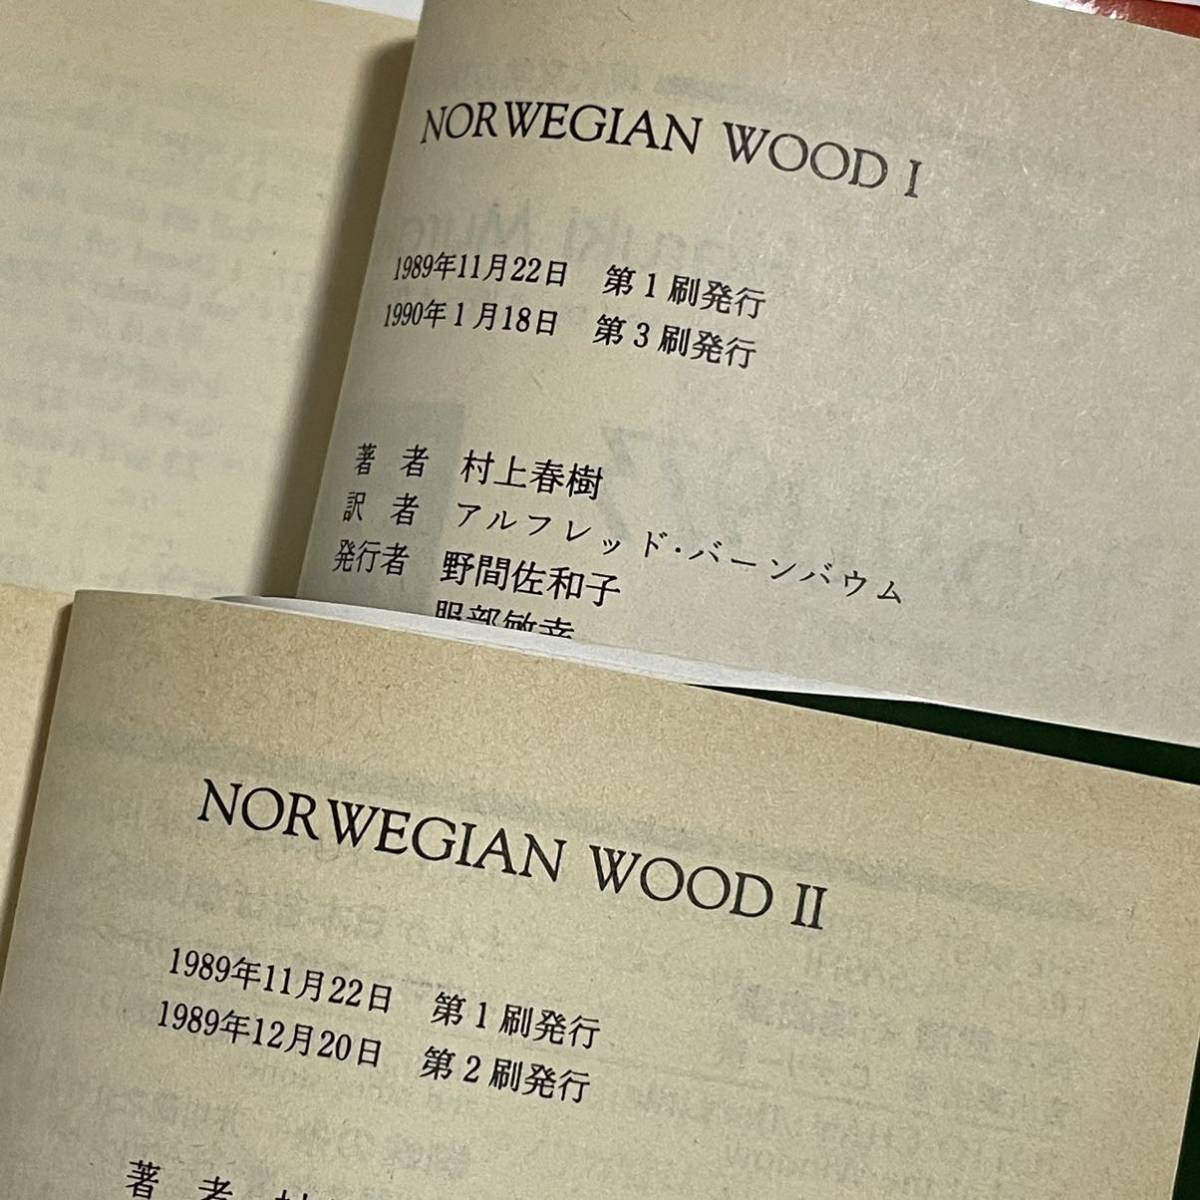 講談社英語文庫 Norwegian Wood ノルウェイの森 1・2巻セット 村上春樹 Haruki Murakami